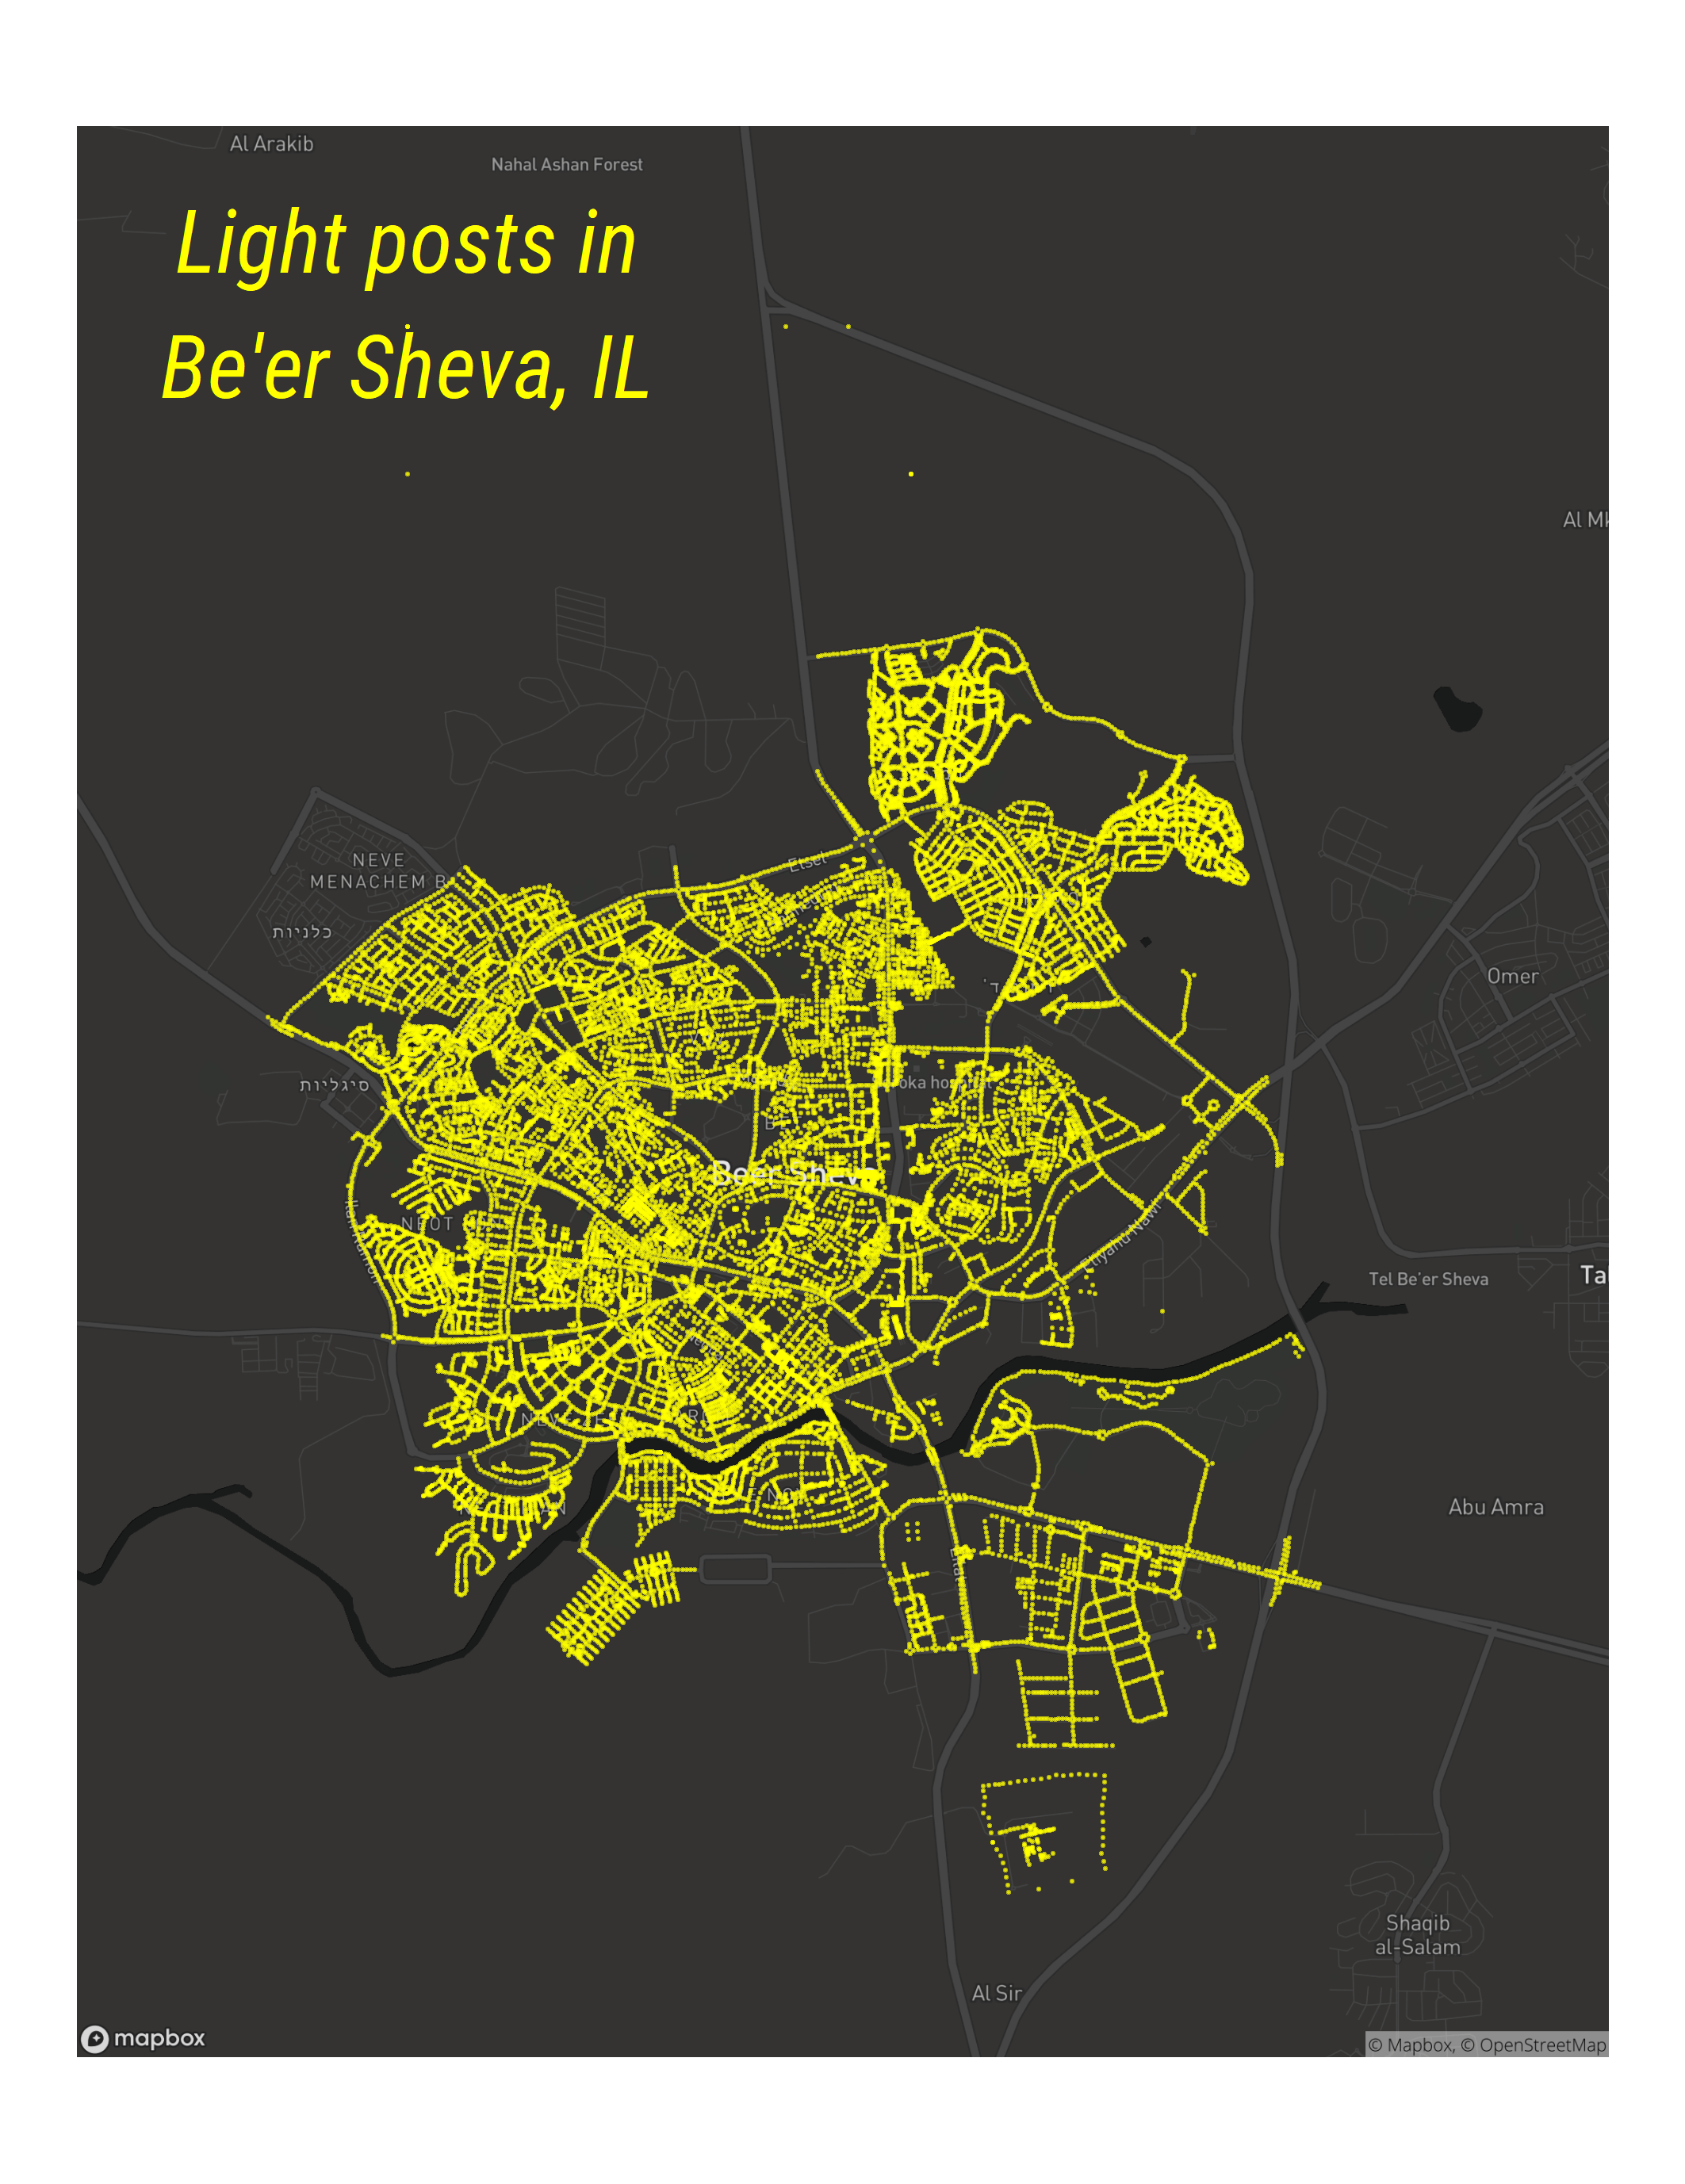 Map of light posts in beer-sheva